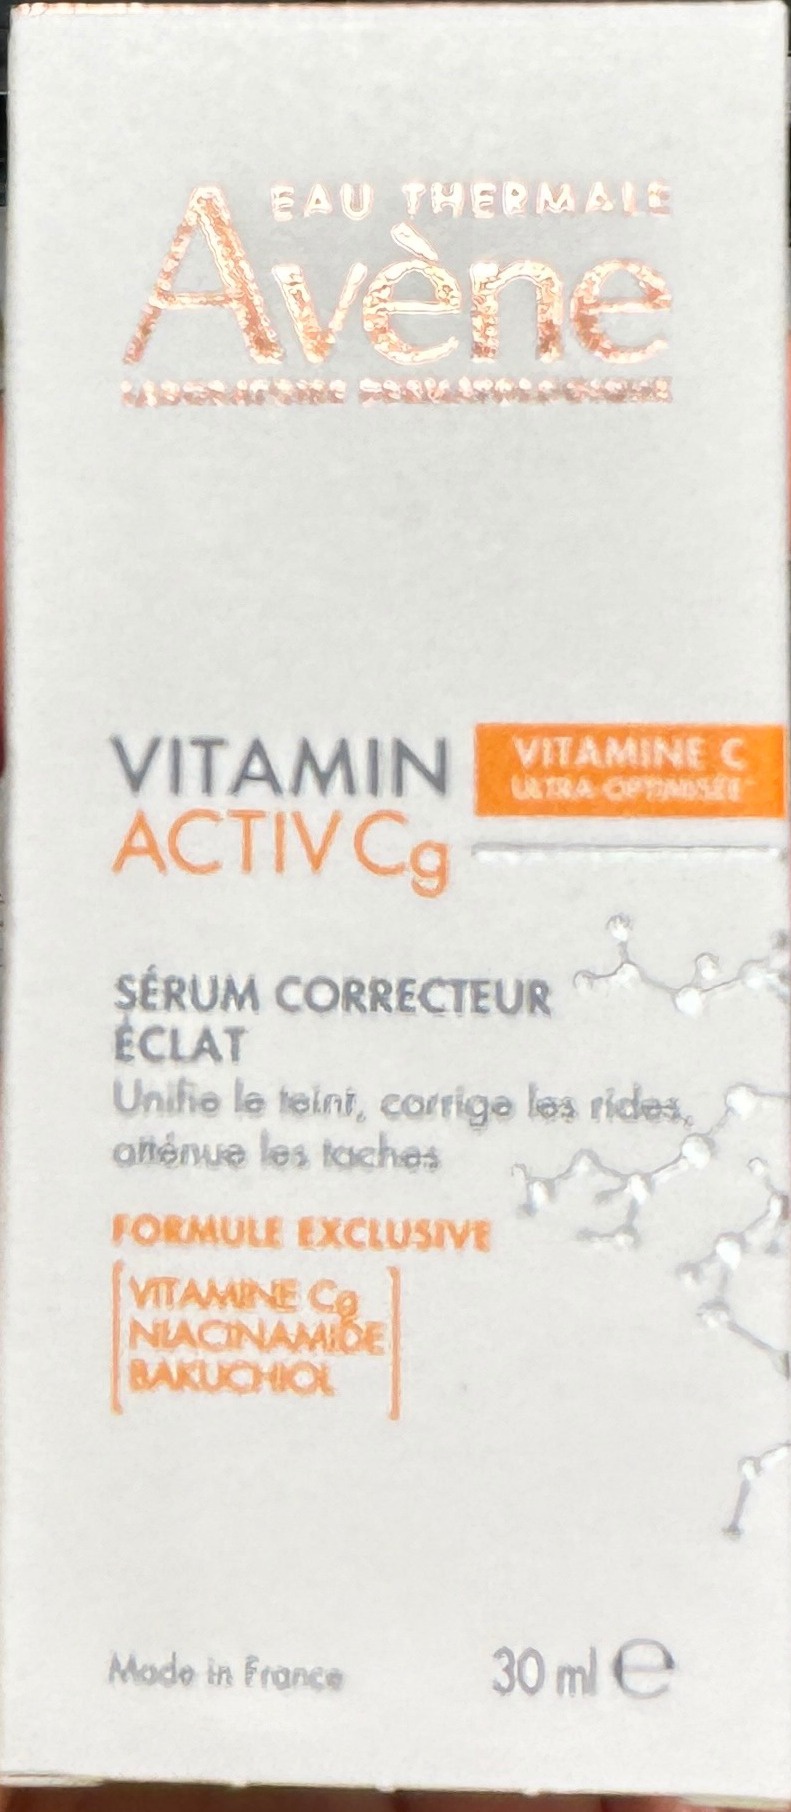 Avene Vitamin Aktiv Cg